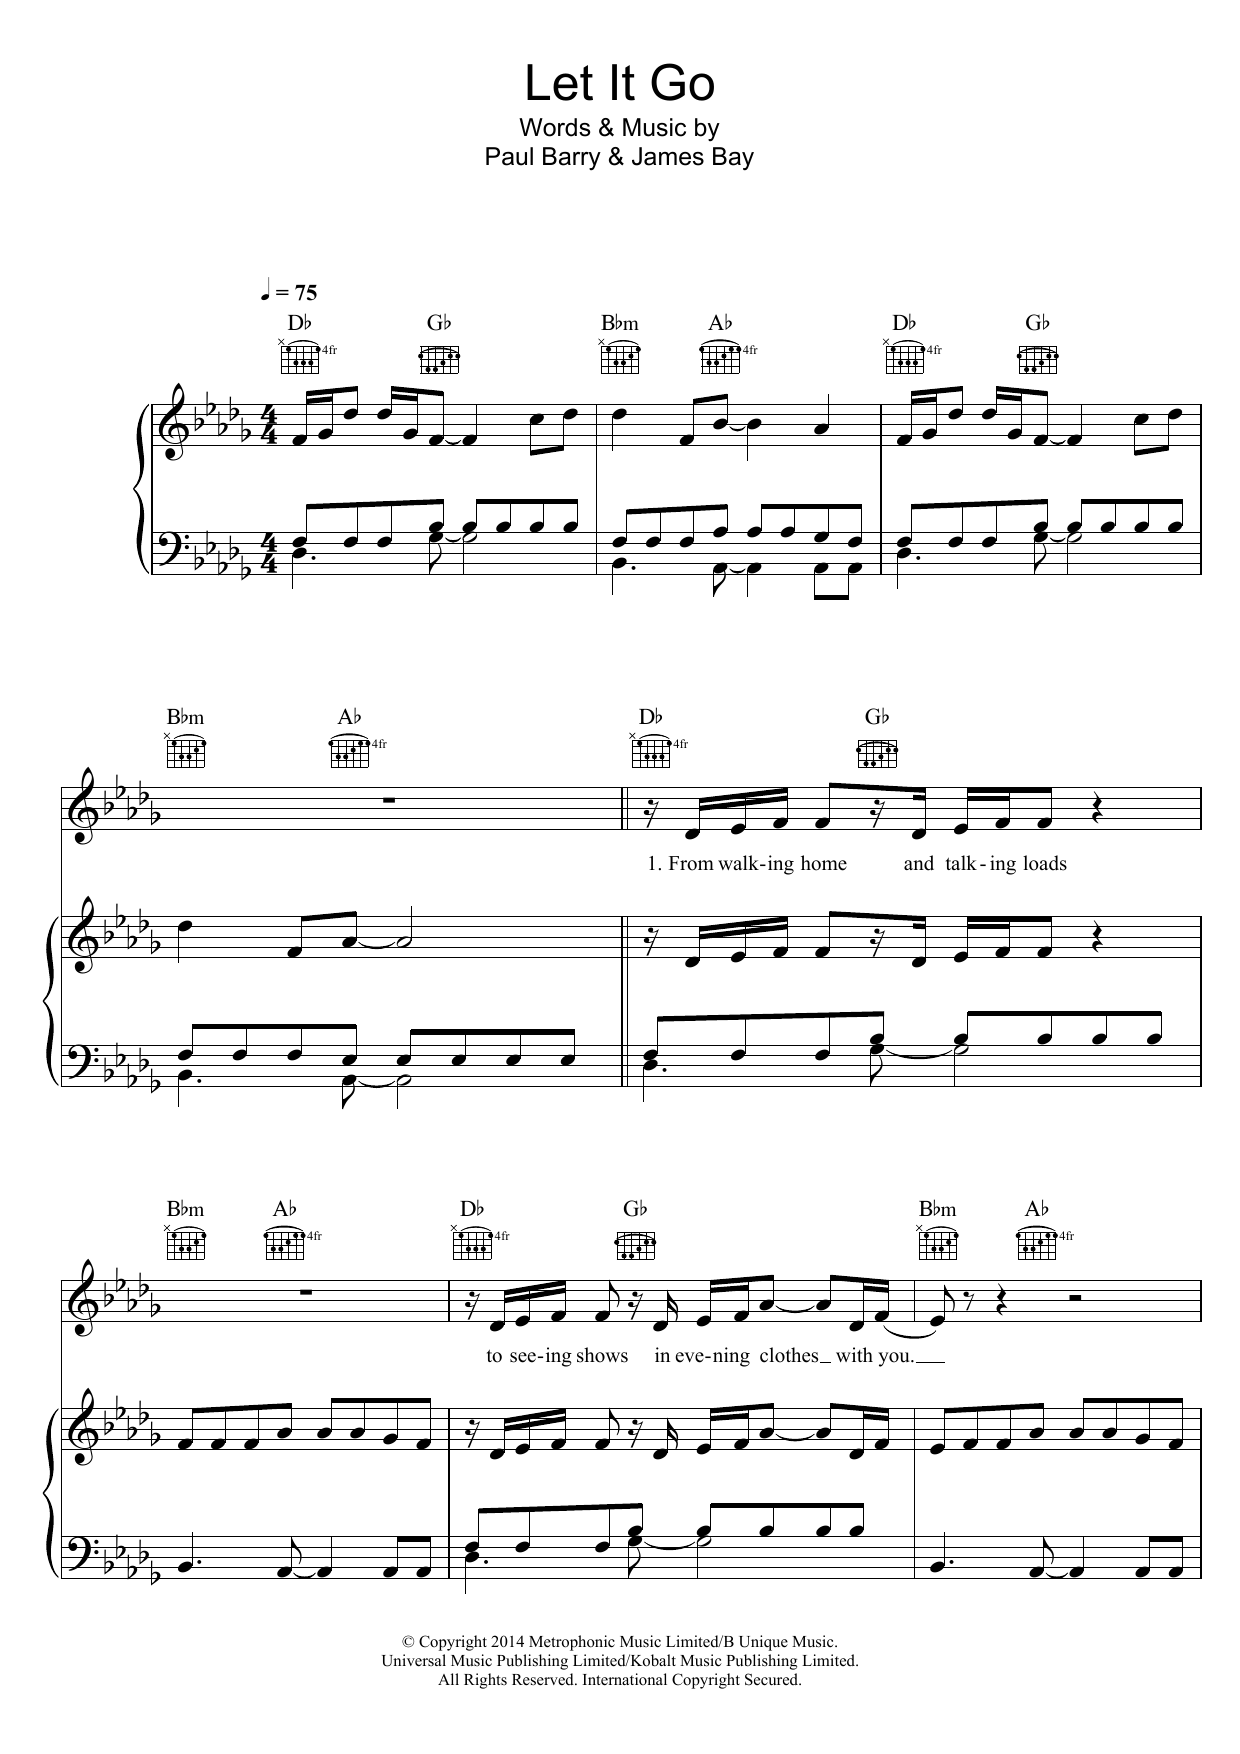 James Bay Let It Go Sheet Music Notes & Chords for Ukulele Chords/Lyrics - Download or Print PDF